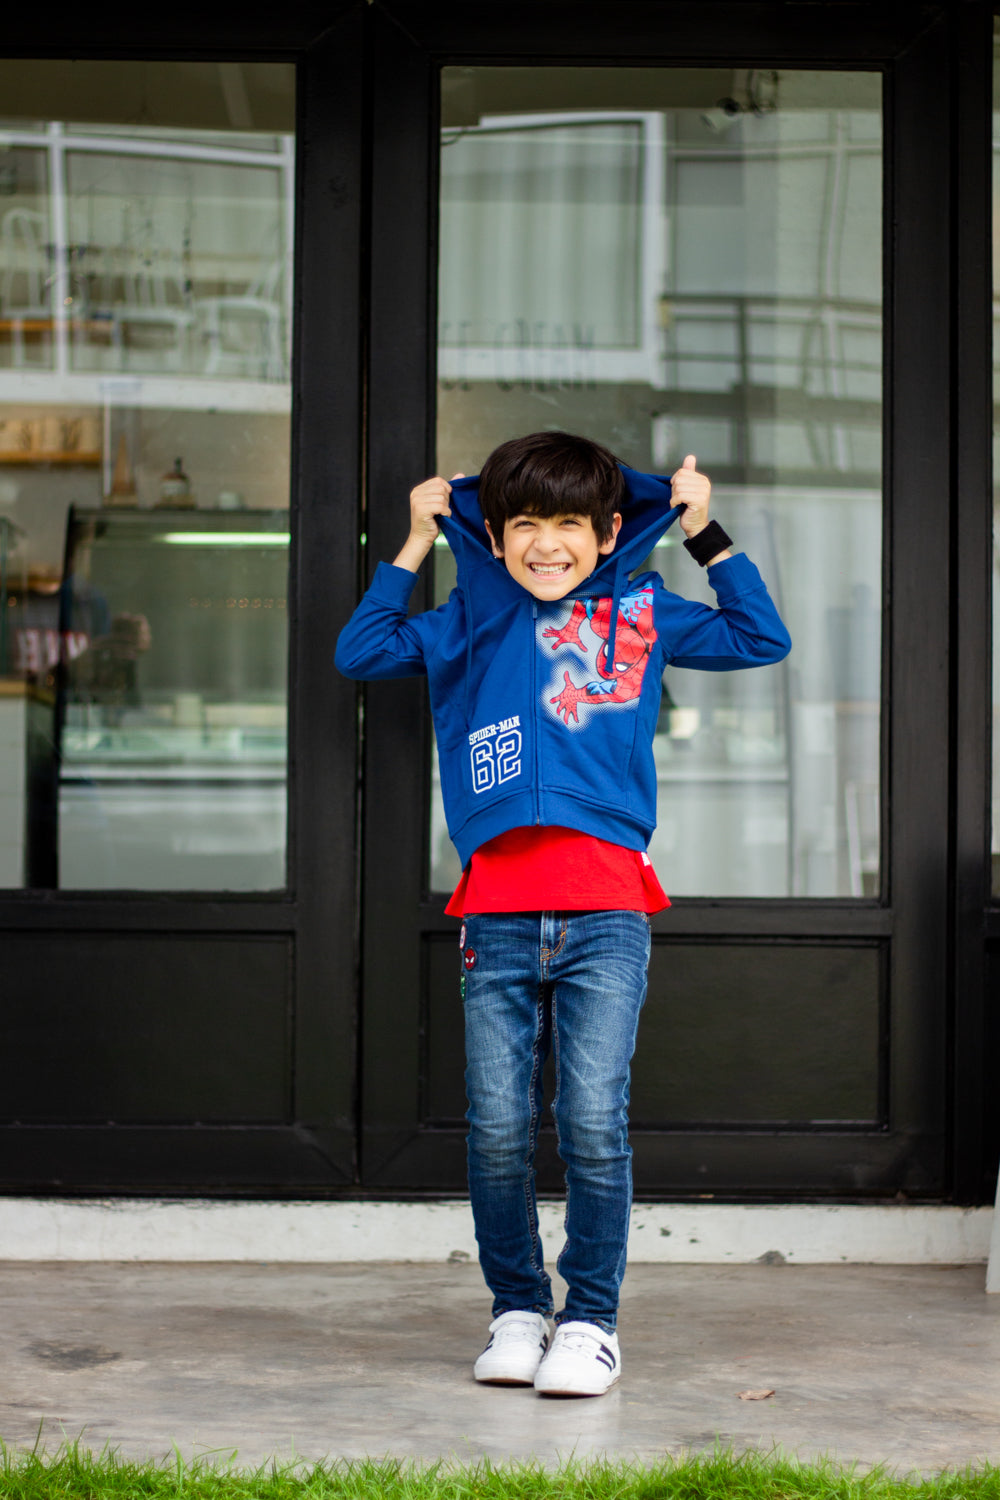 Marvel Boy Spider-Man Jacket - เสื้อแจ็คเก็ตเด็กมาร์เวลลายสไปเดอร์แมน